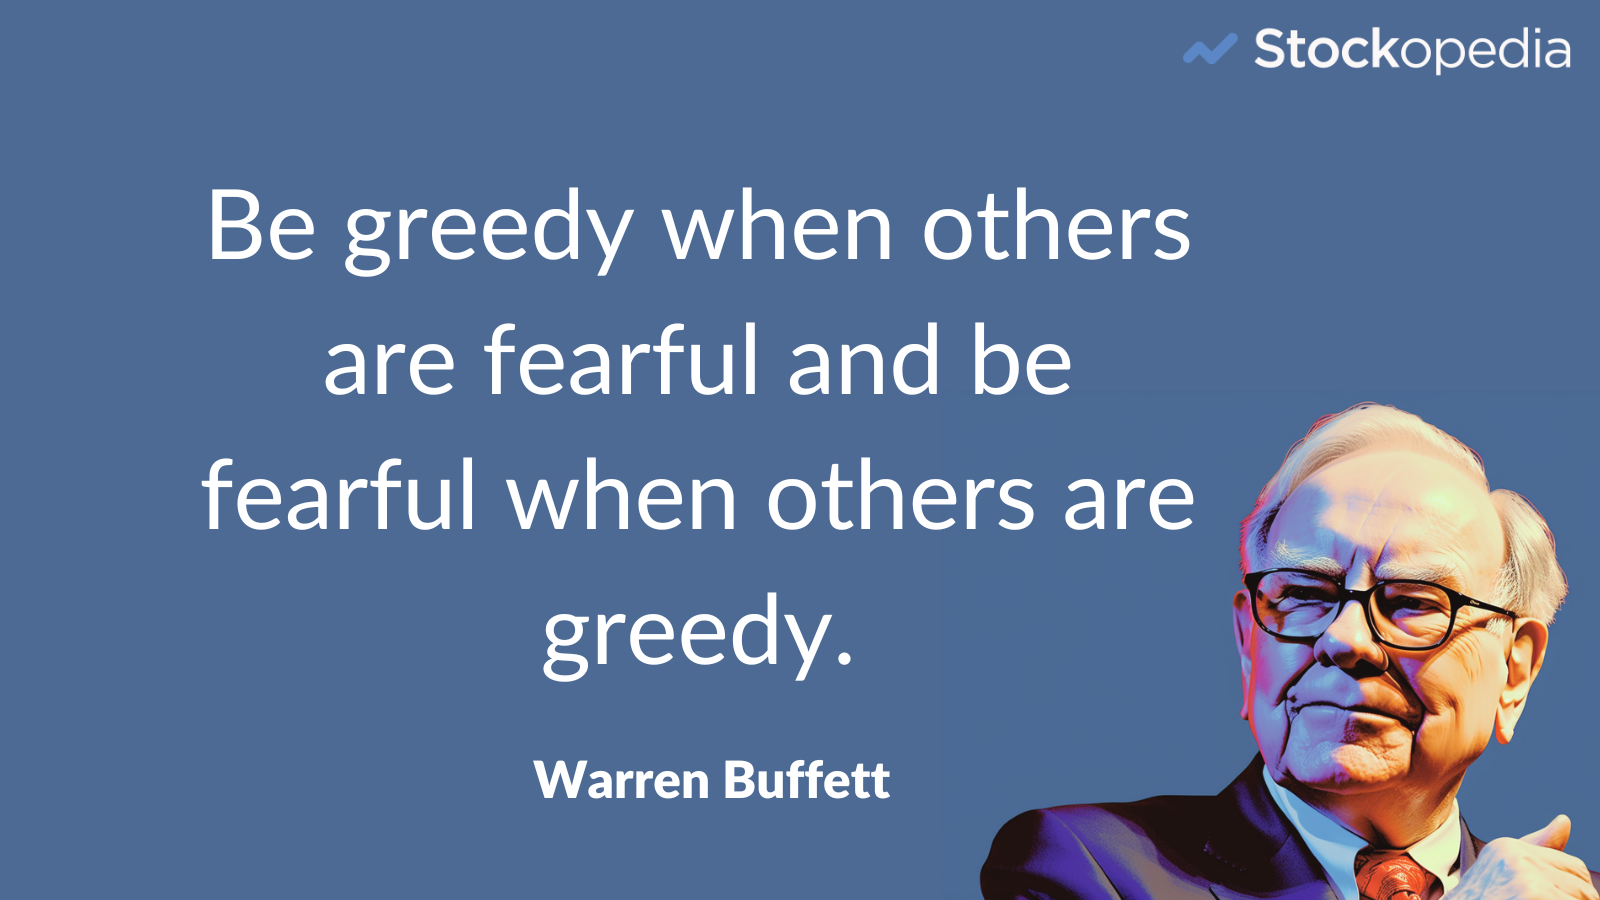 Warren Buffett: "Be greedy when others are fearful and fearful when others are greedy"